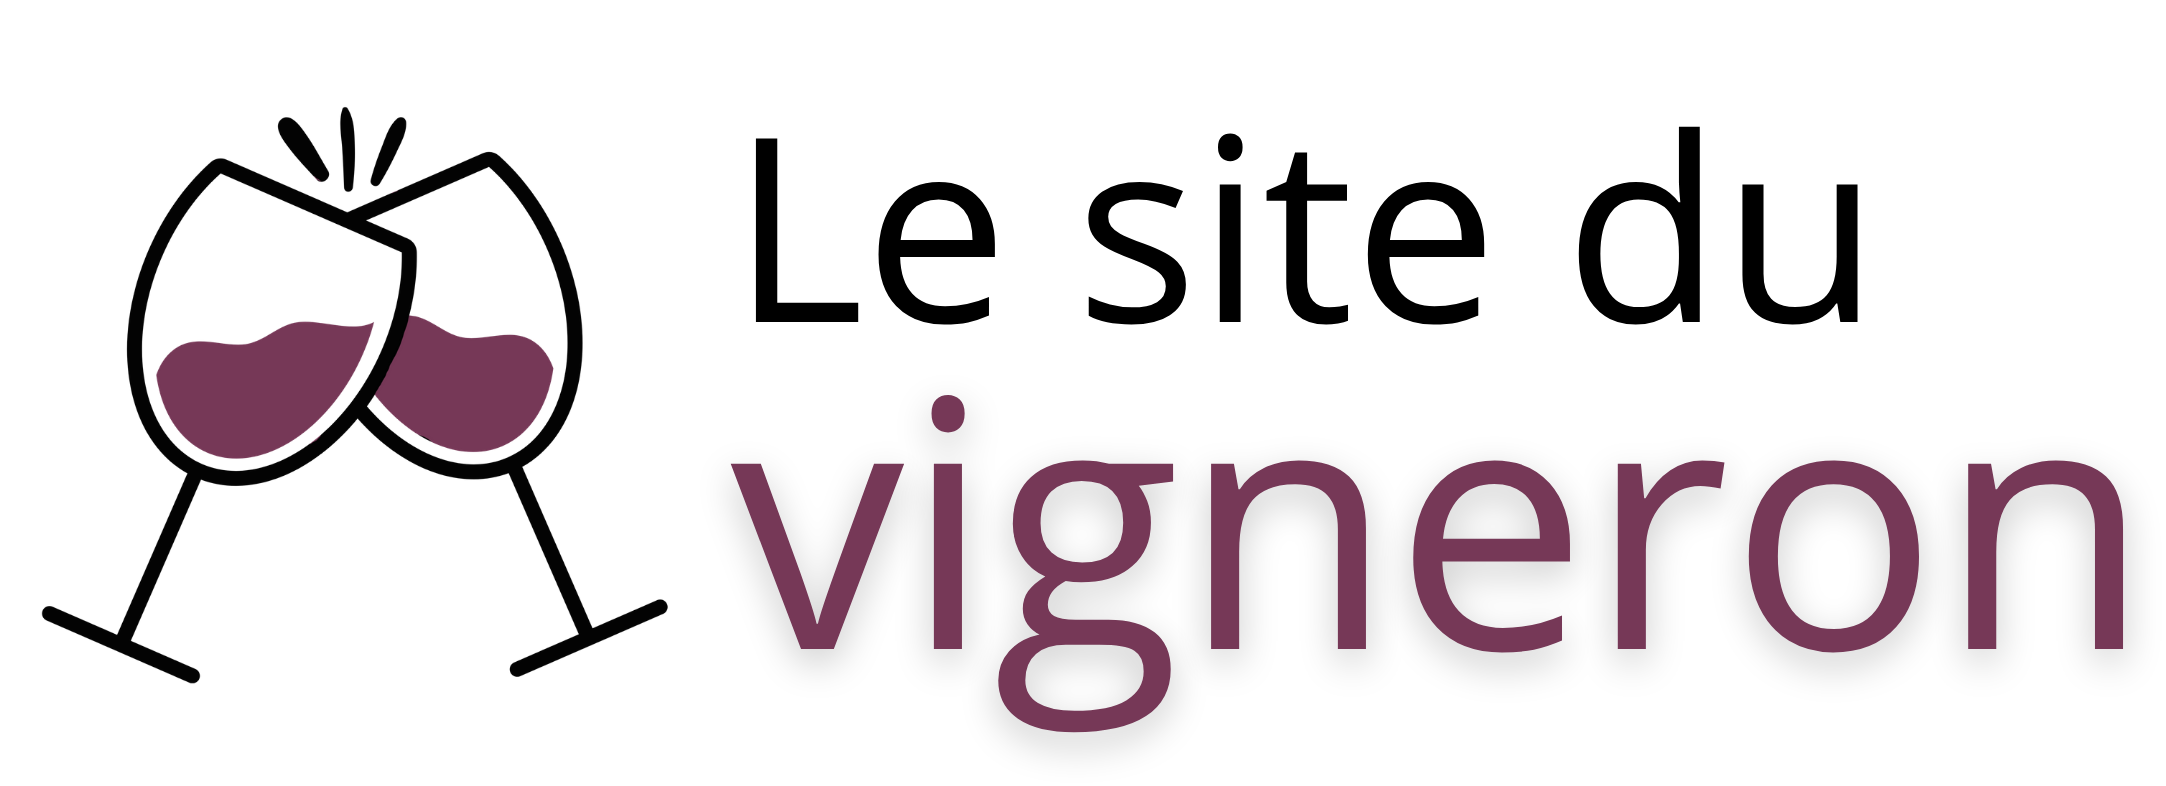 site_du_vigneron